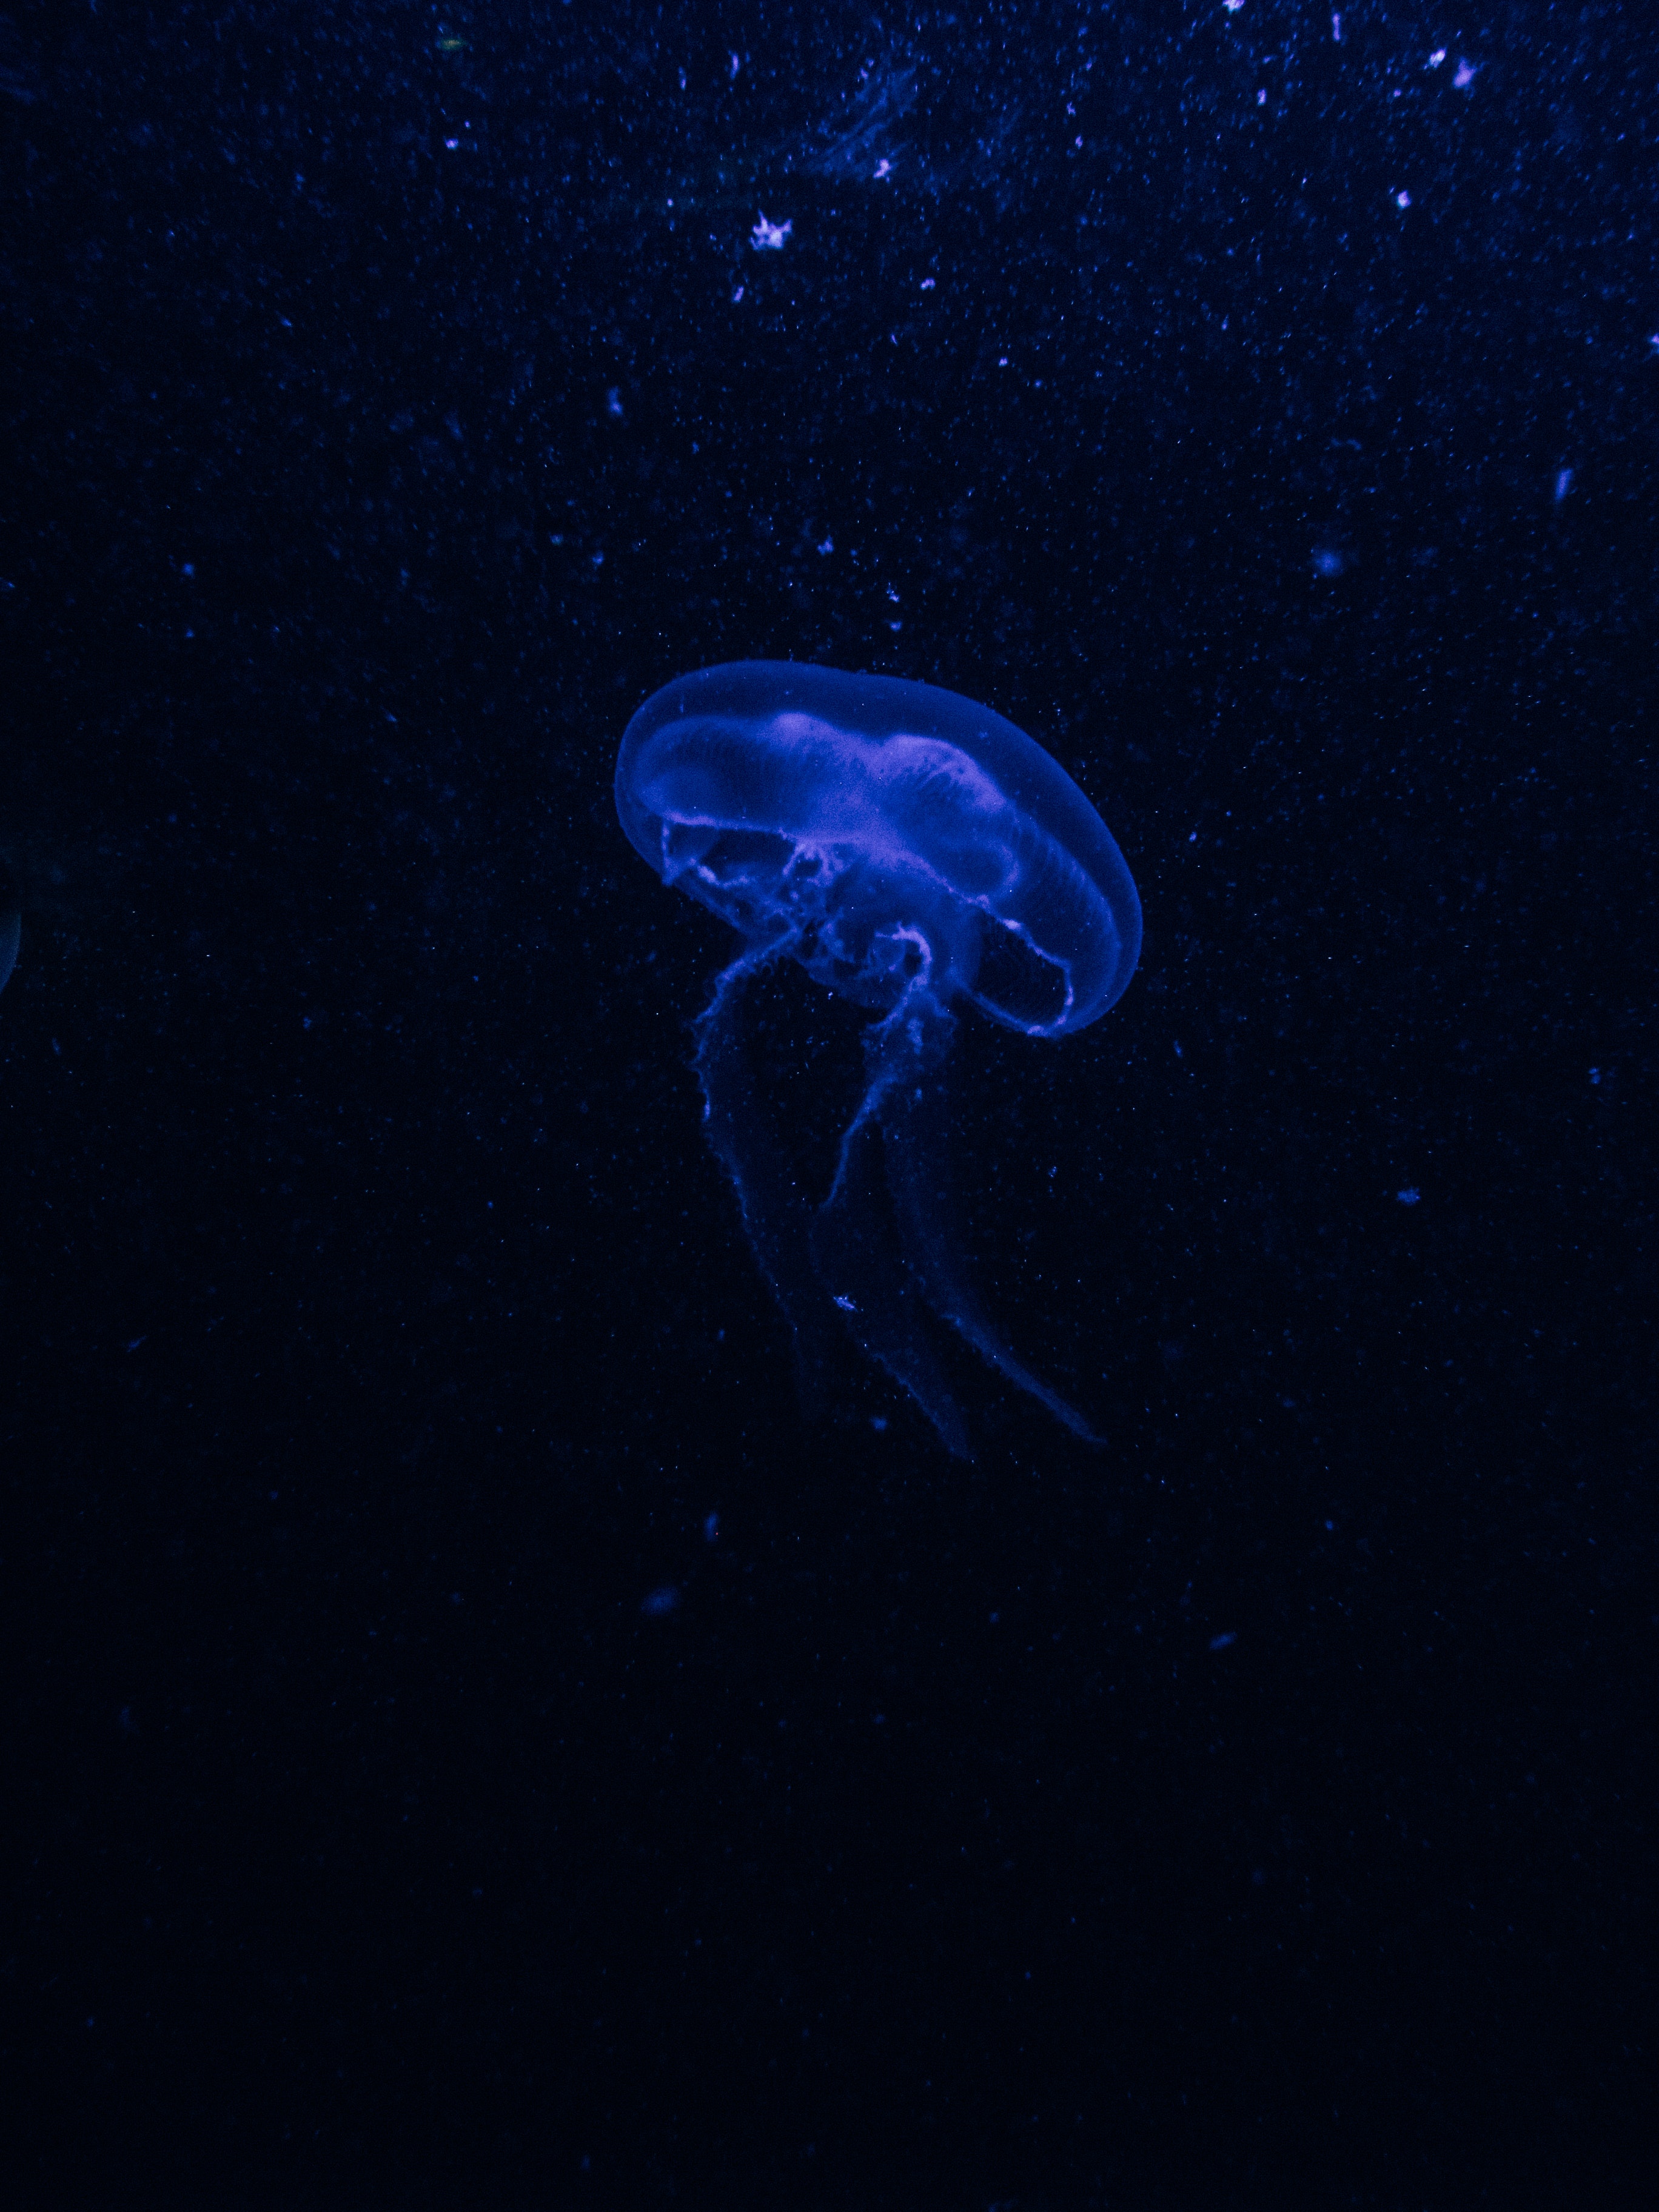 Free HD jellyfish, blue, dark, glow, underwater world, phosphorus, hydroid jellyfish